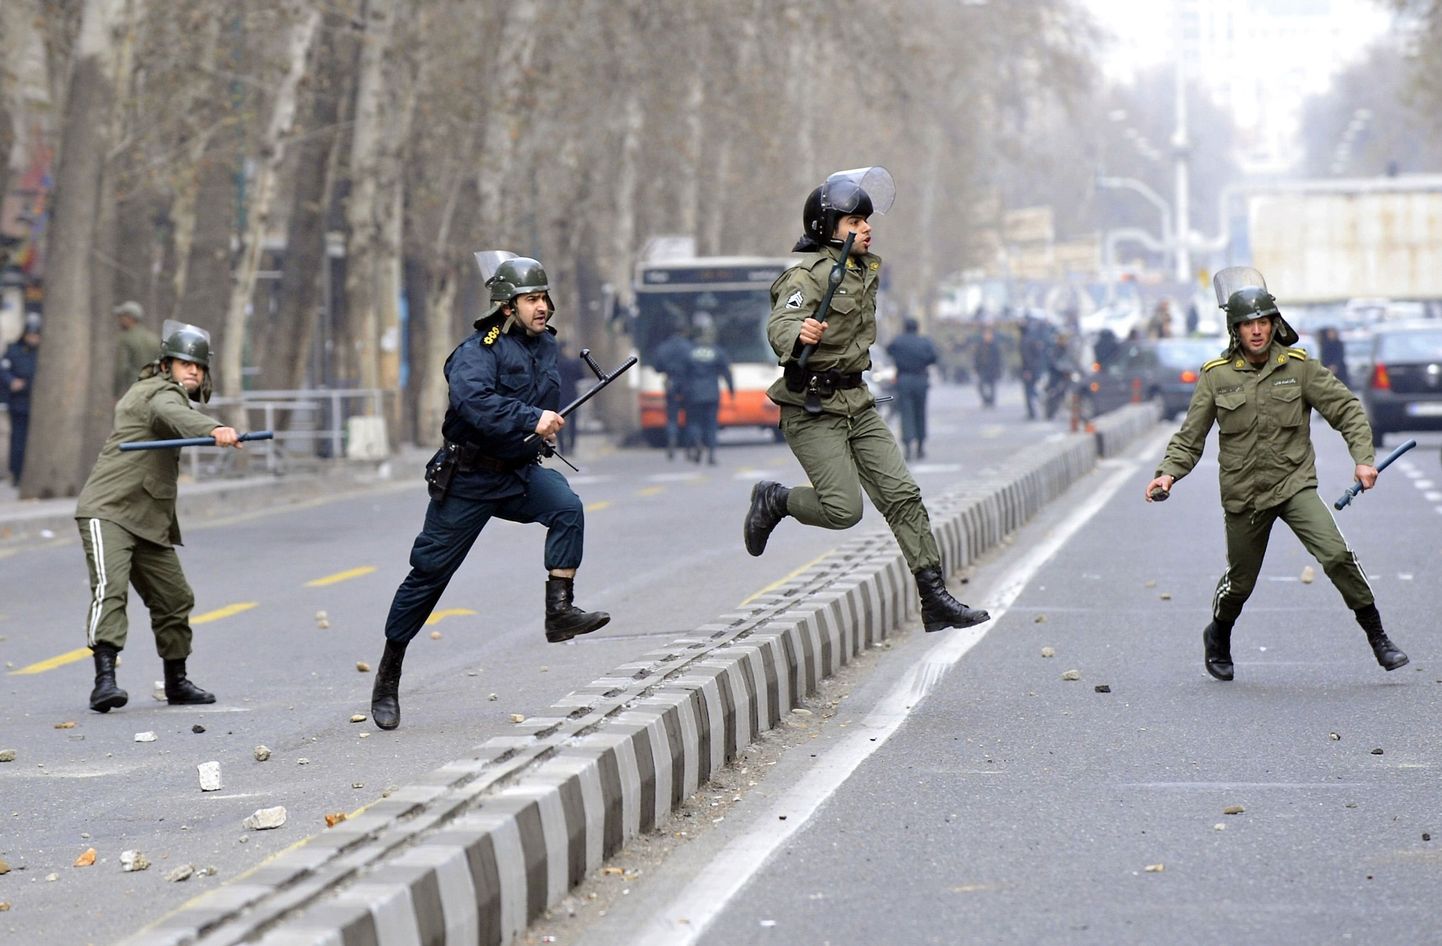 Iraani opositsiooni teatel tapeti Teherani meeleavaldusel neli inimest.